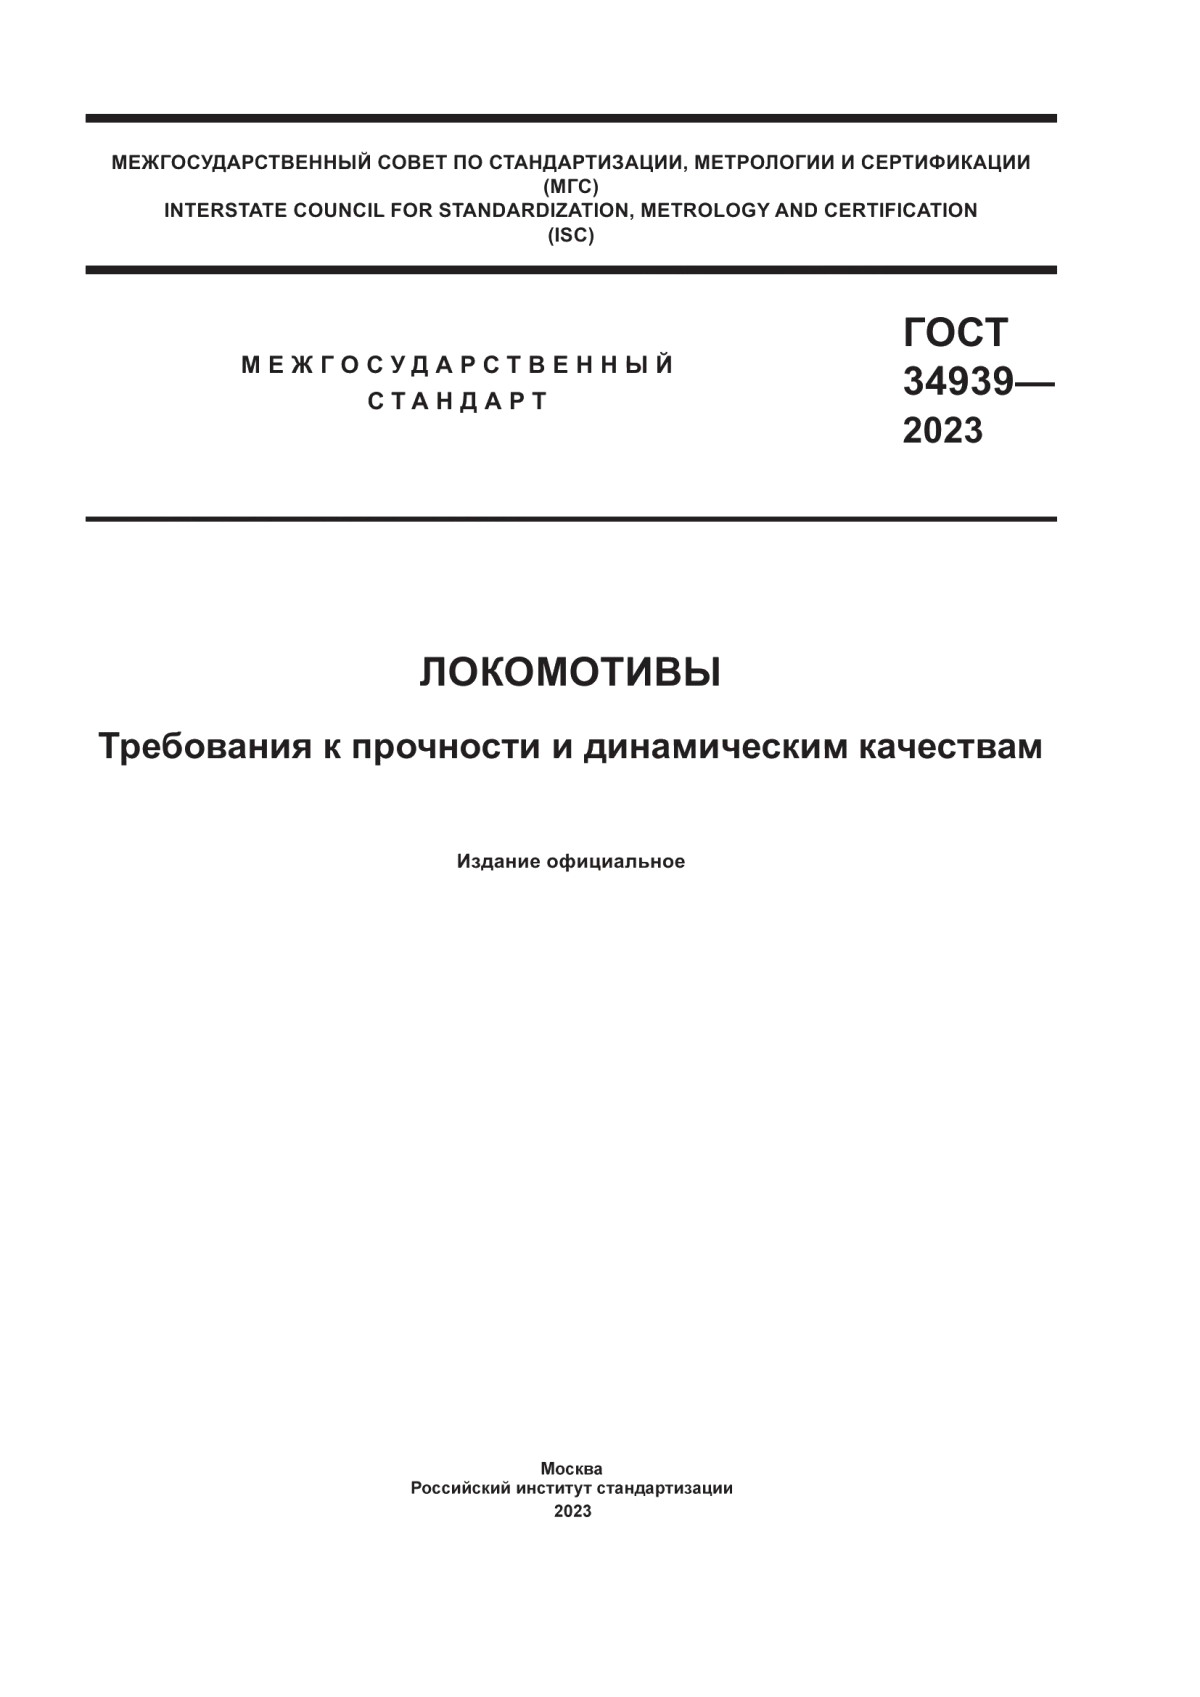 ГОСТ 34939-2023 Локомотивы. Требования к прочности и динамическим качествам